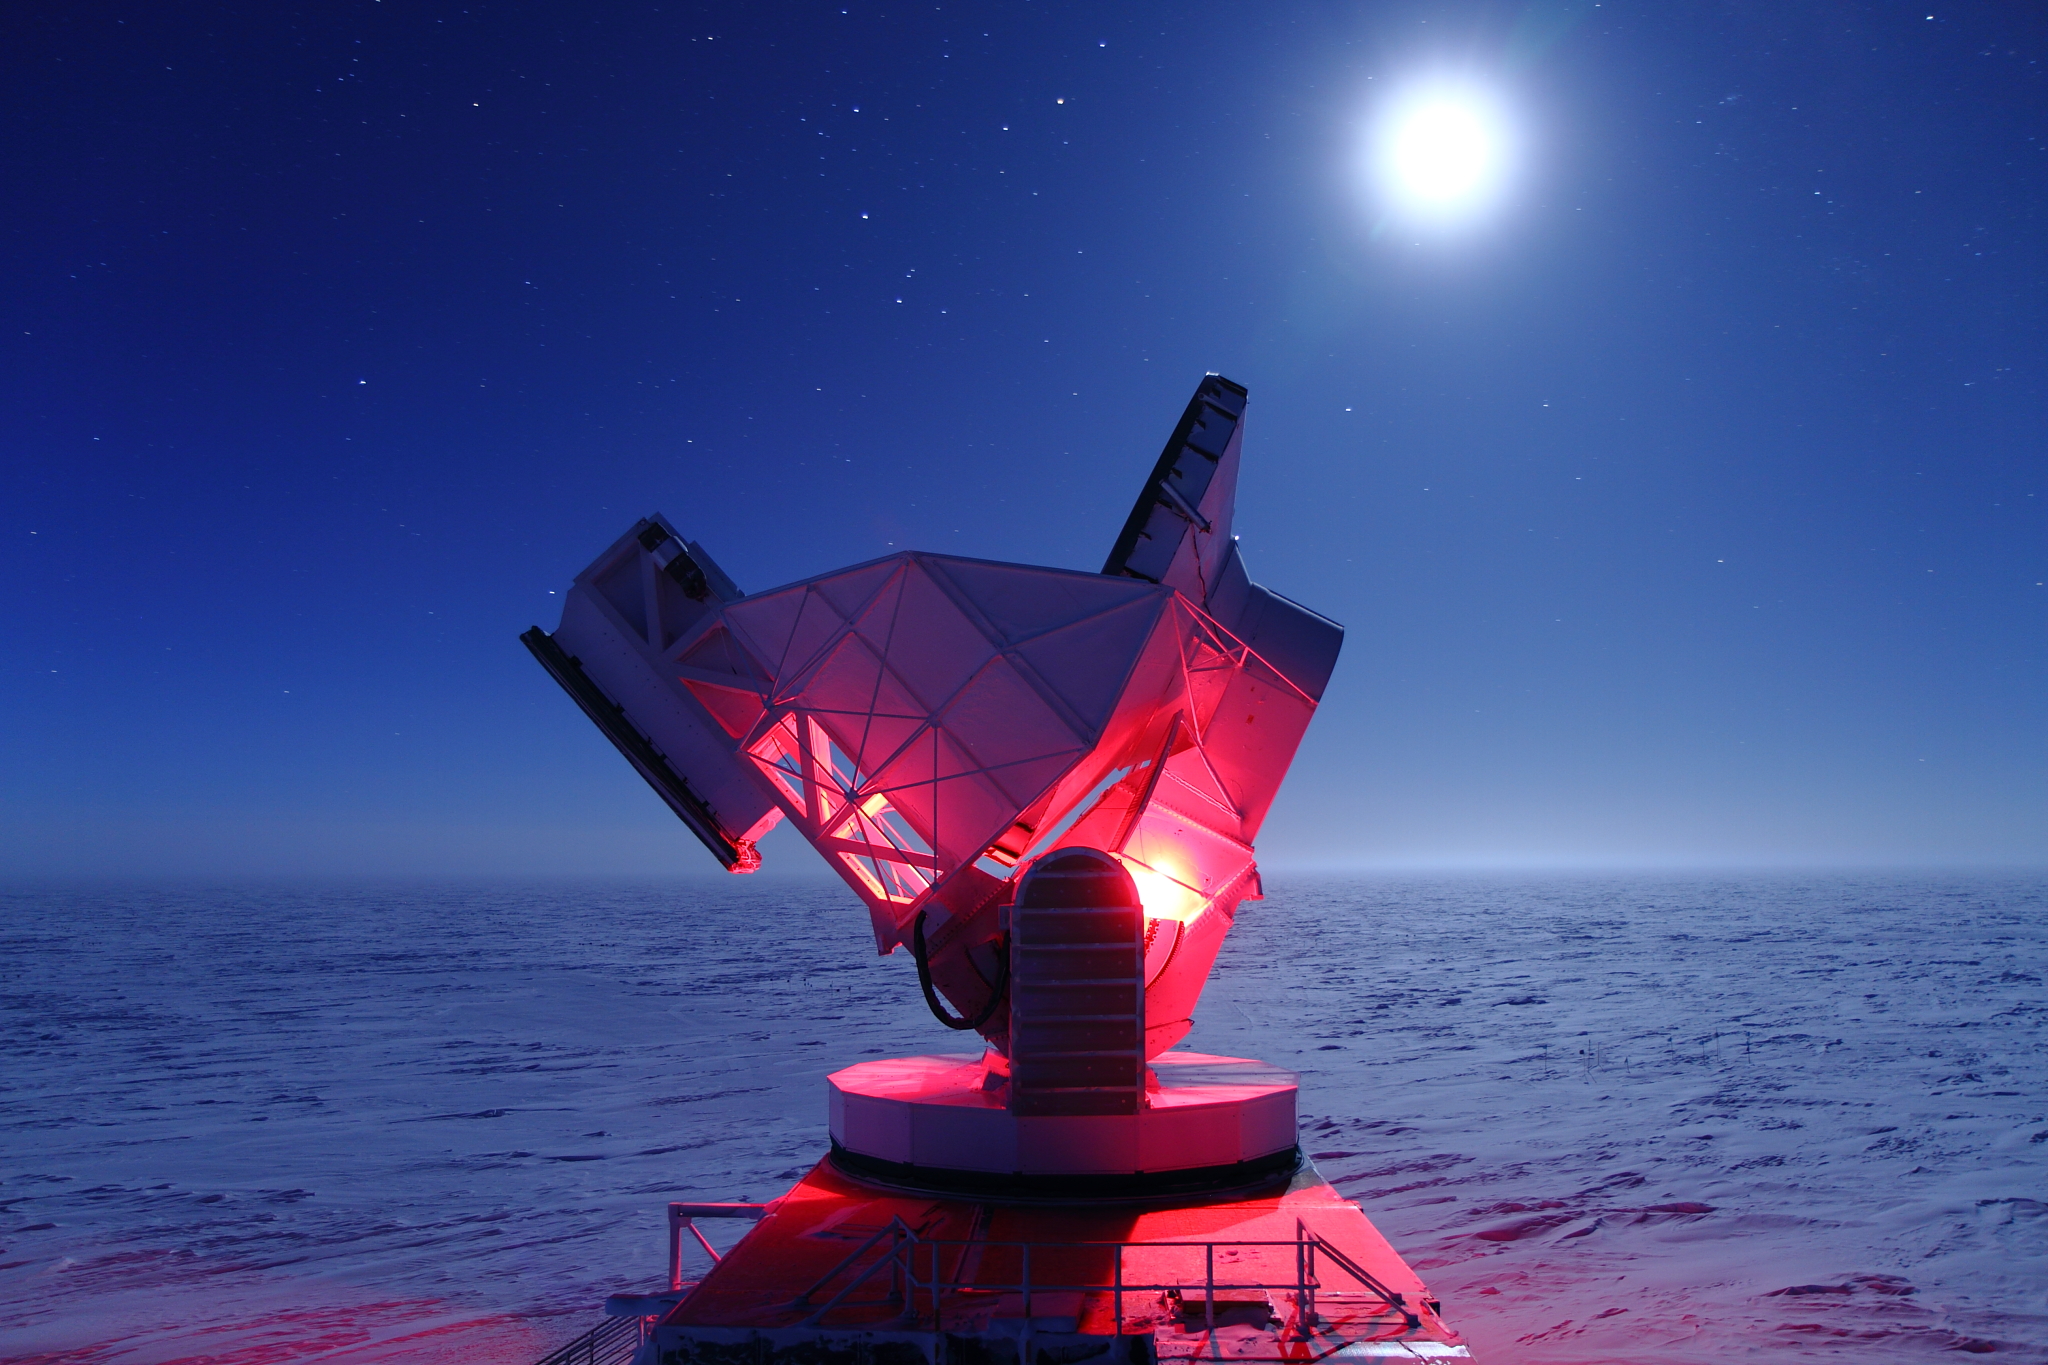 Южный полюс день и ночь. Южный Полярный телескоп (SPT). Южный Полярный телескоп – Антарктида. Южный Полярный телескоп (SPT), Антарктида. Южный Полярный телескоп (South Pole Telescope, SPT).